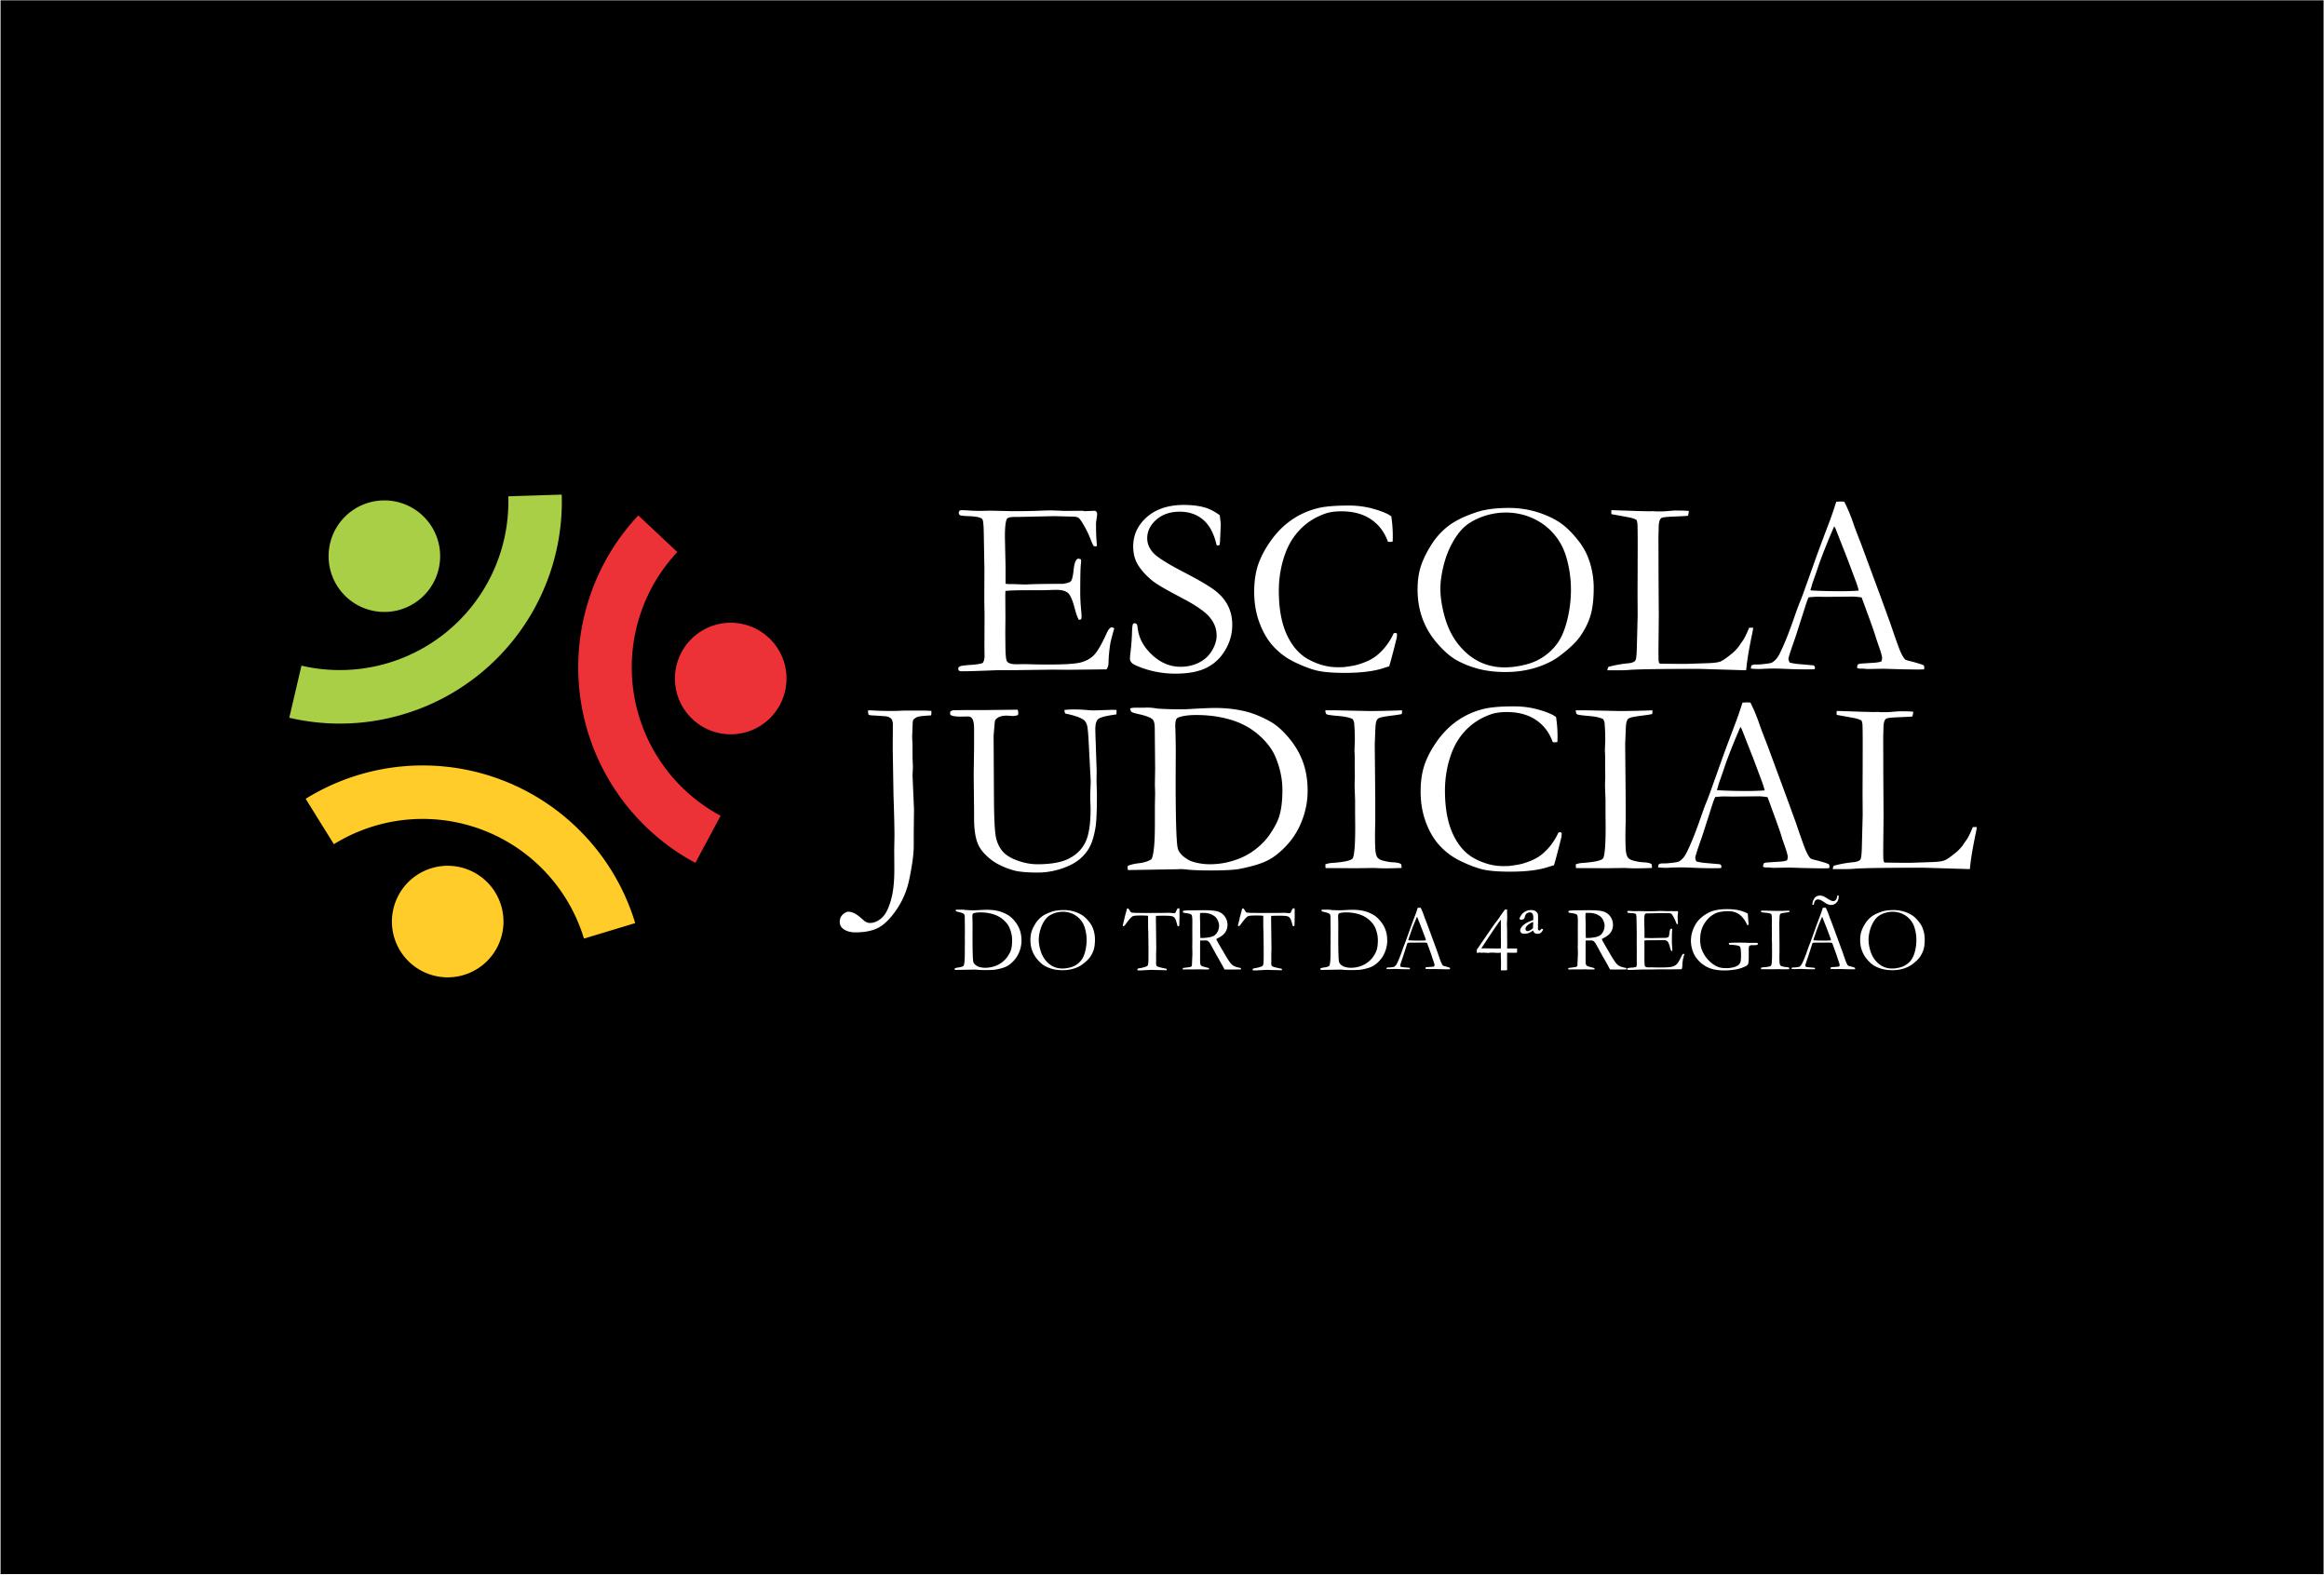 Retângulo na cor preta, com o logotipo da Escola Judicial do TRT4 ao centro.